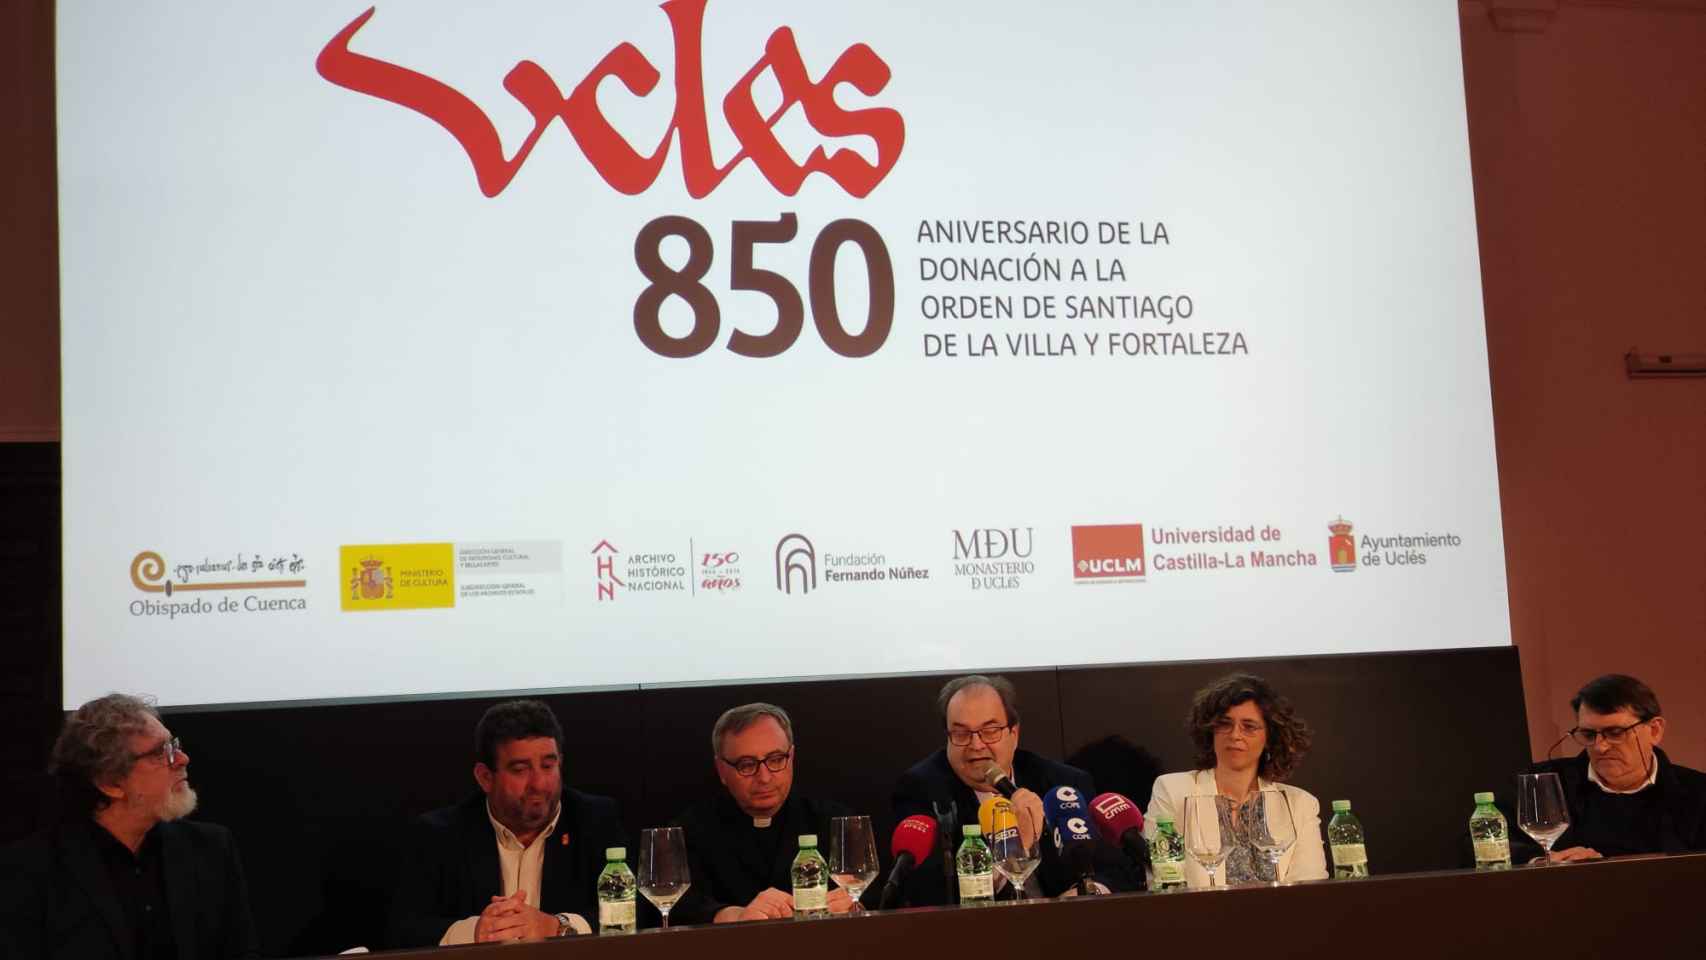 David Pérez, José Luis Serrano, Antonio Fernández, Fernando Núñez, Ana López Cuadrado y Juan Ramón Moreno, de izquierda a derecha.